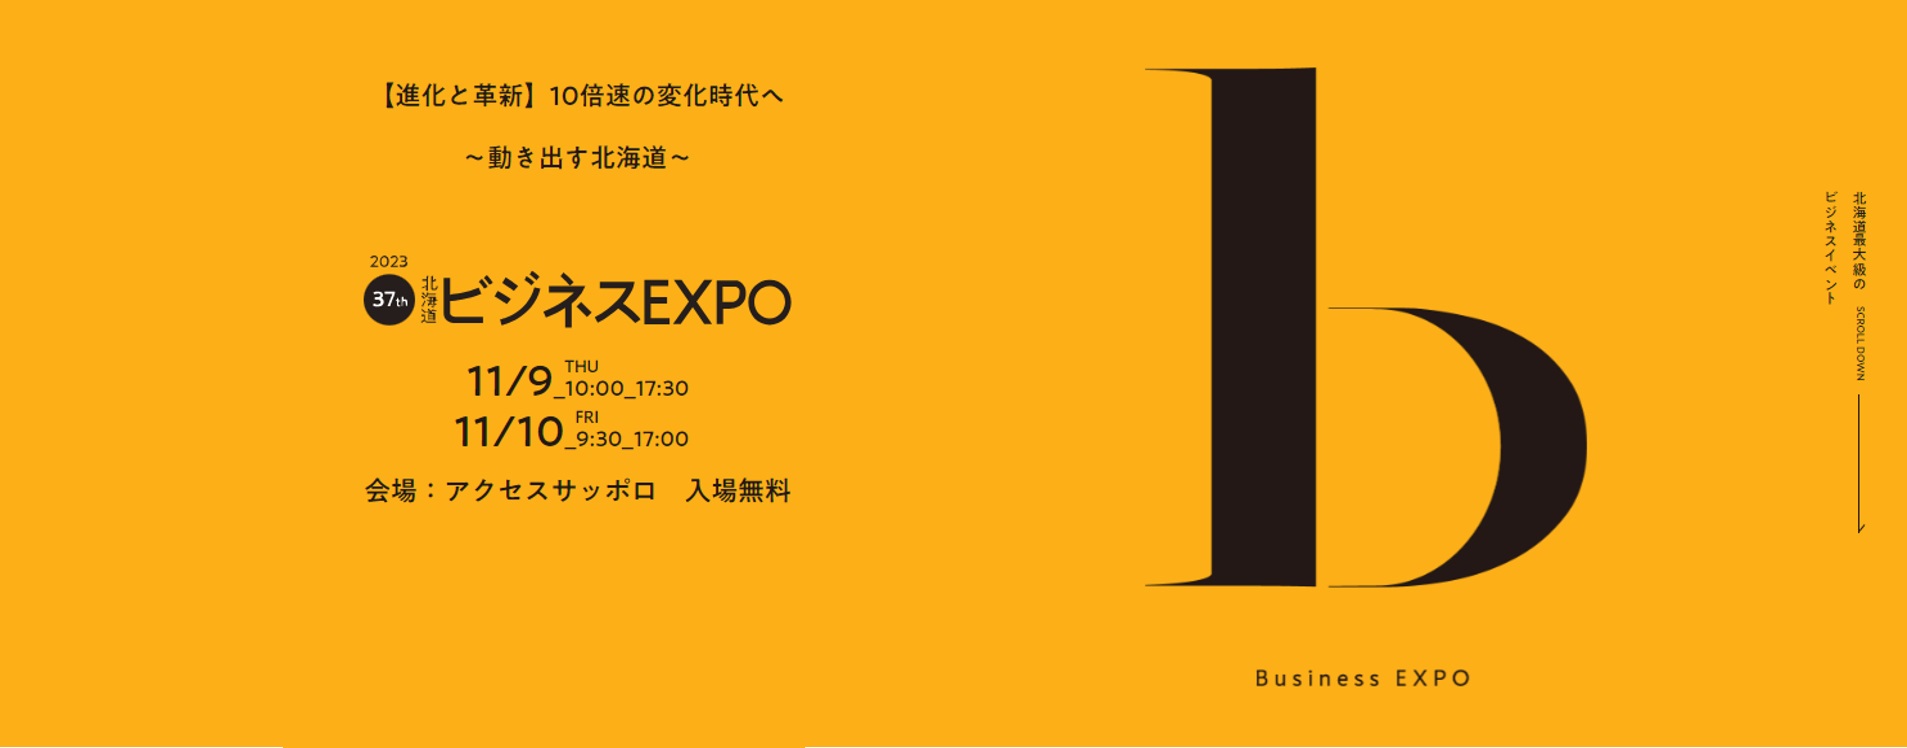 北海道ビジネスEXPO